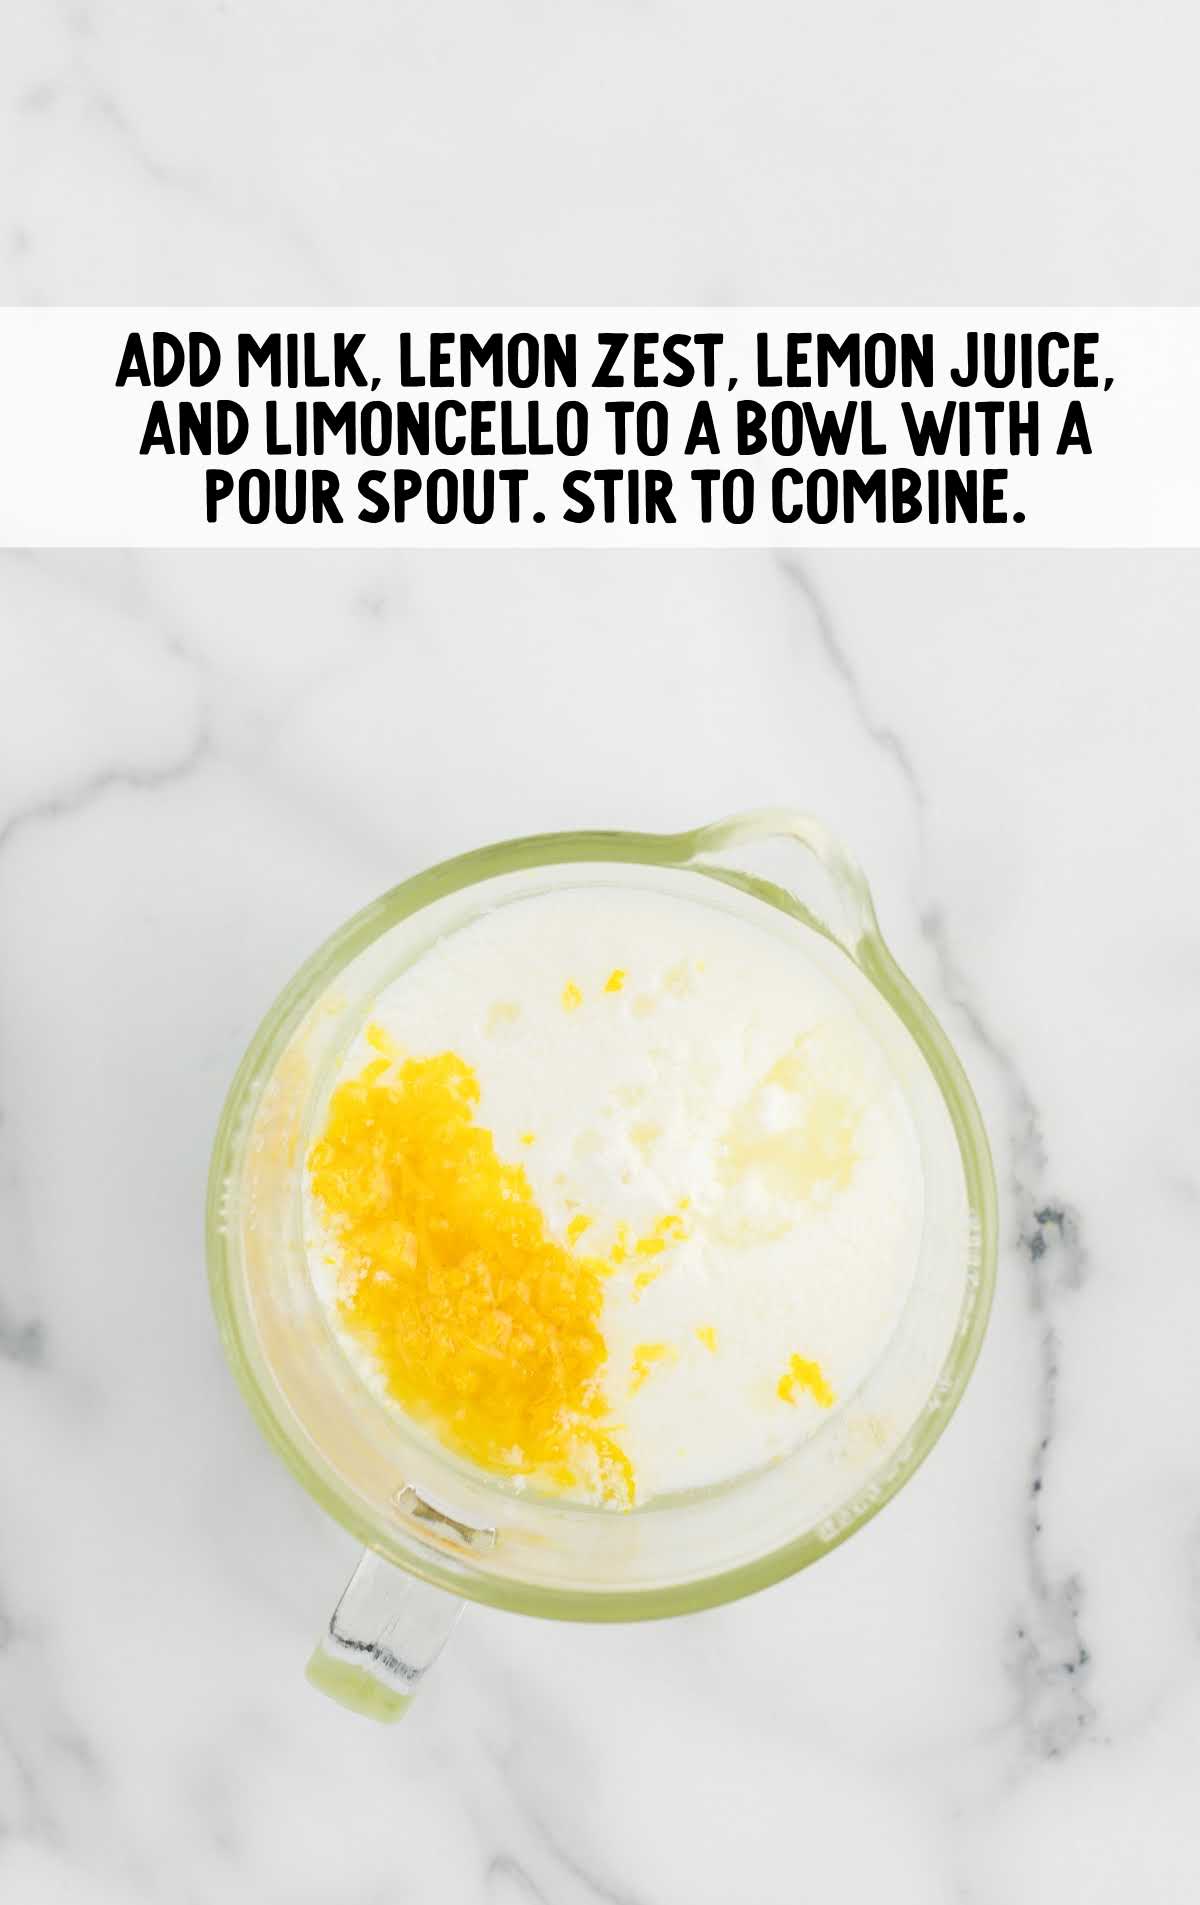 milk, lemon zest, lemon juice, limoncello added to the bowl